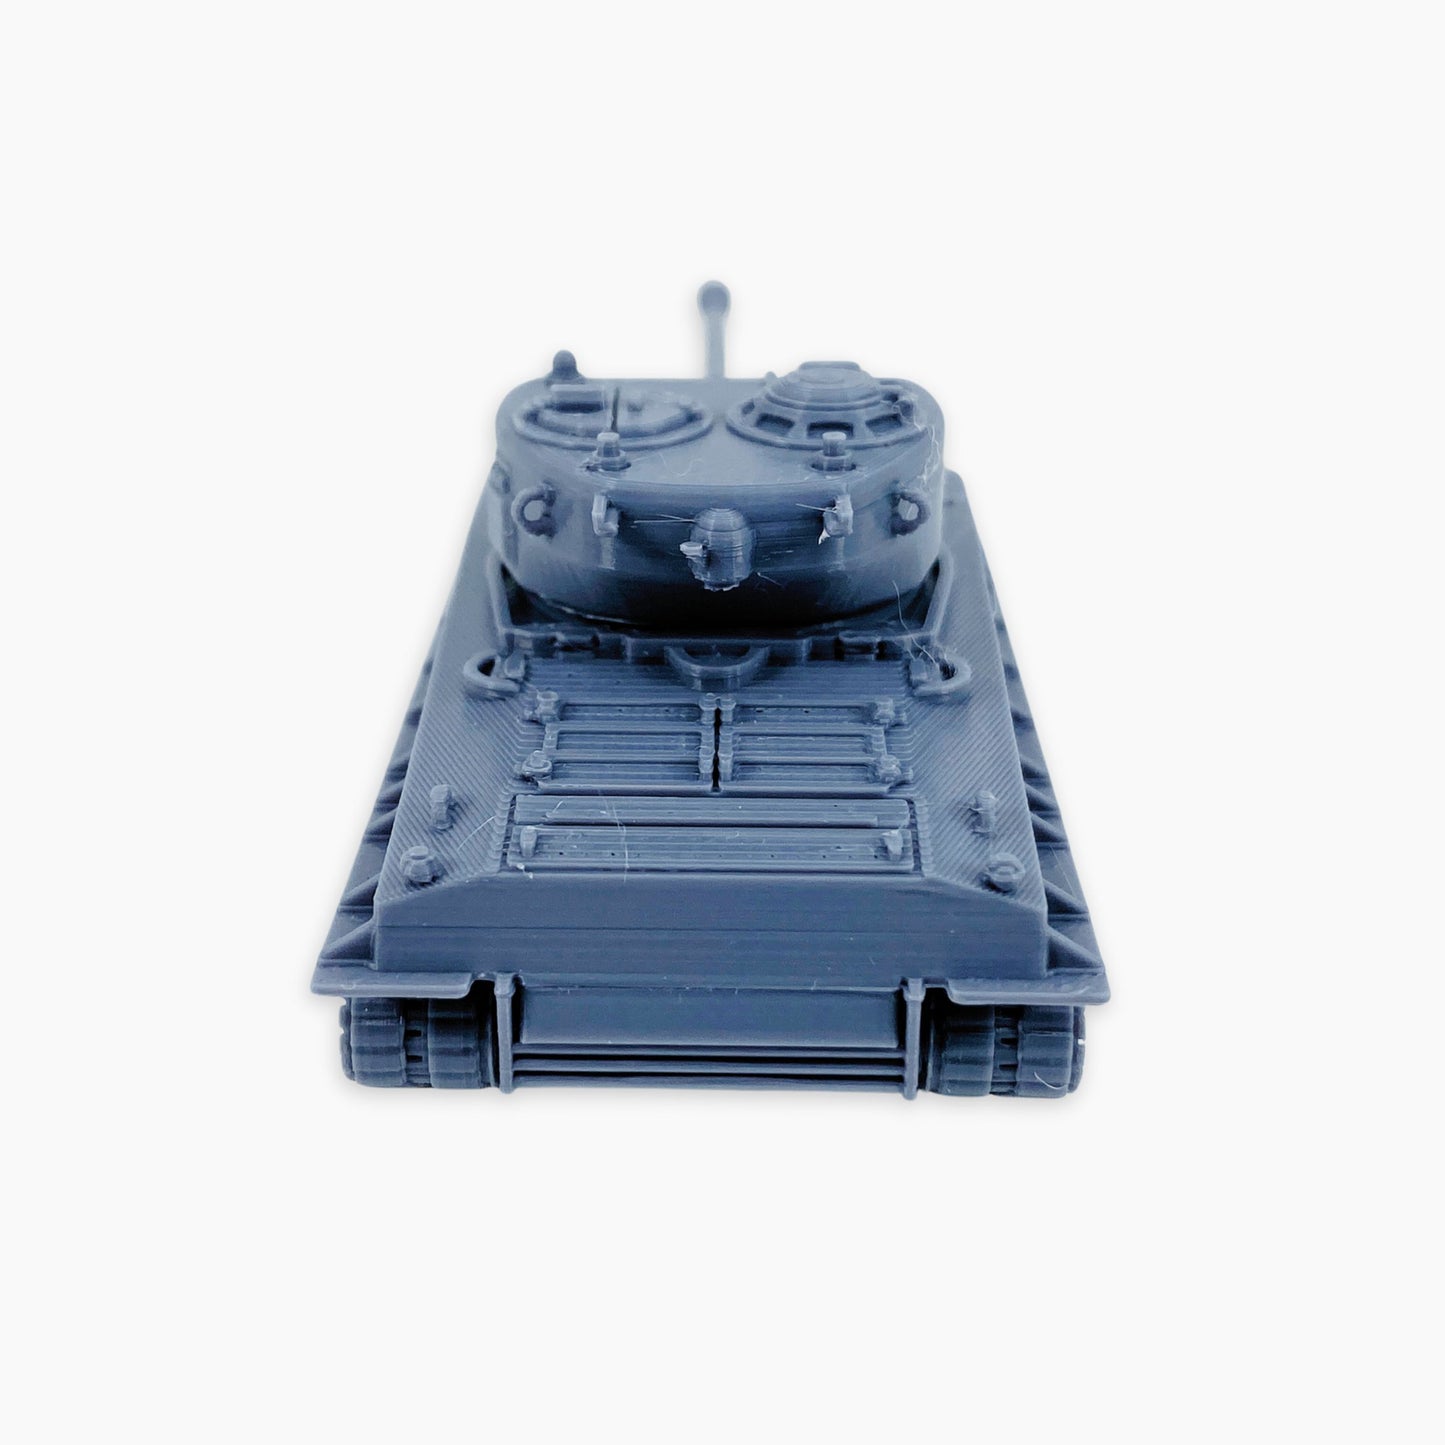 Sherman M4A3E8